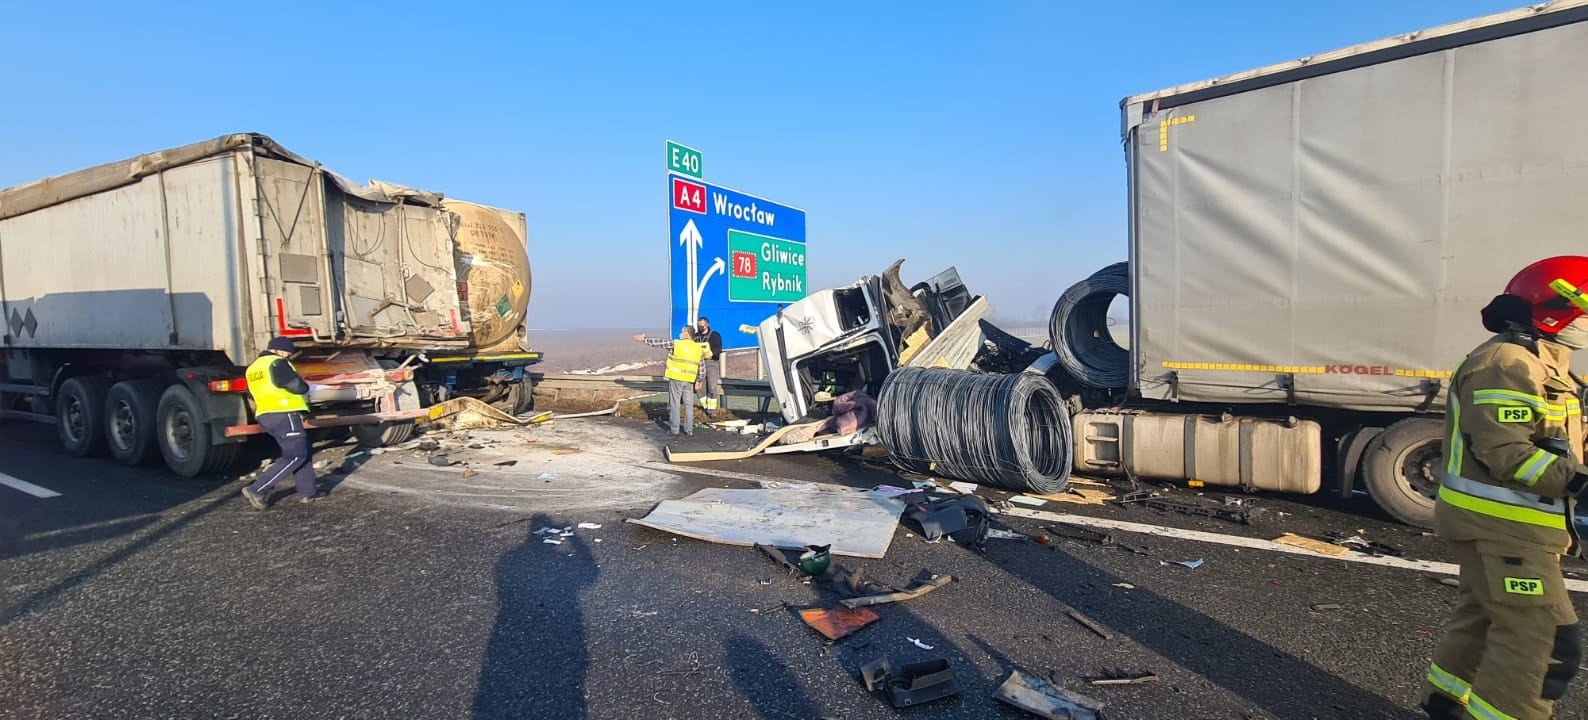 Wypadek w Gliwicach na autostradzie A4. Przed bramkami zderzyło się kilka  TIR-ów | Głos Wielkopolski